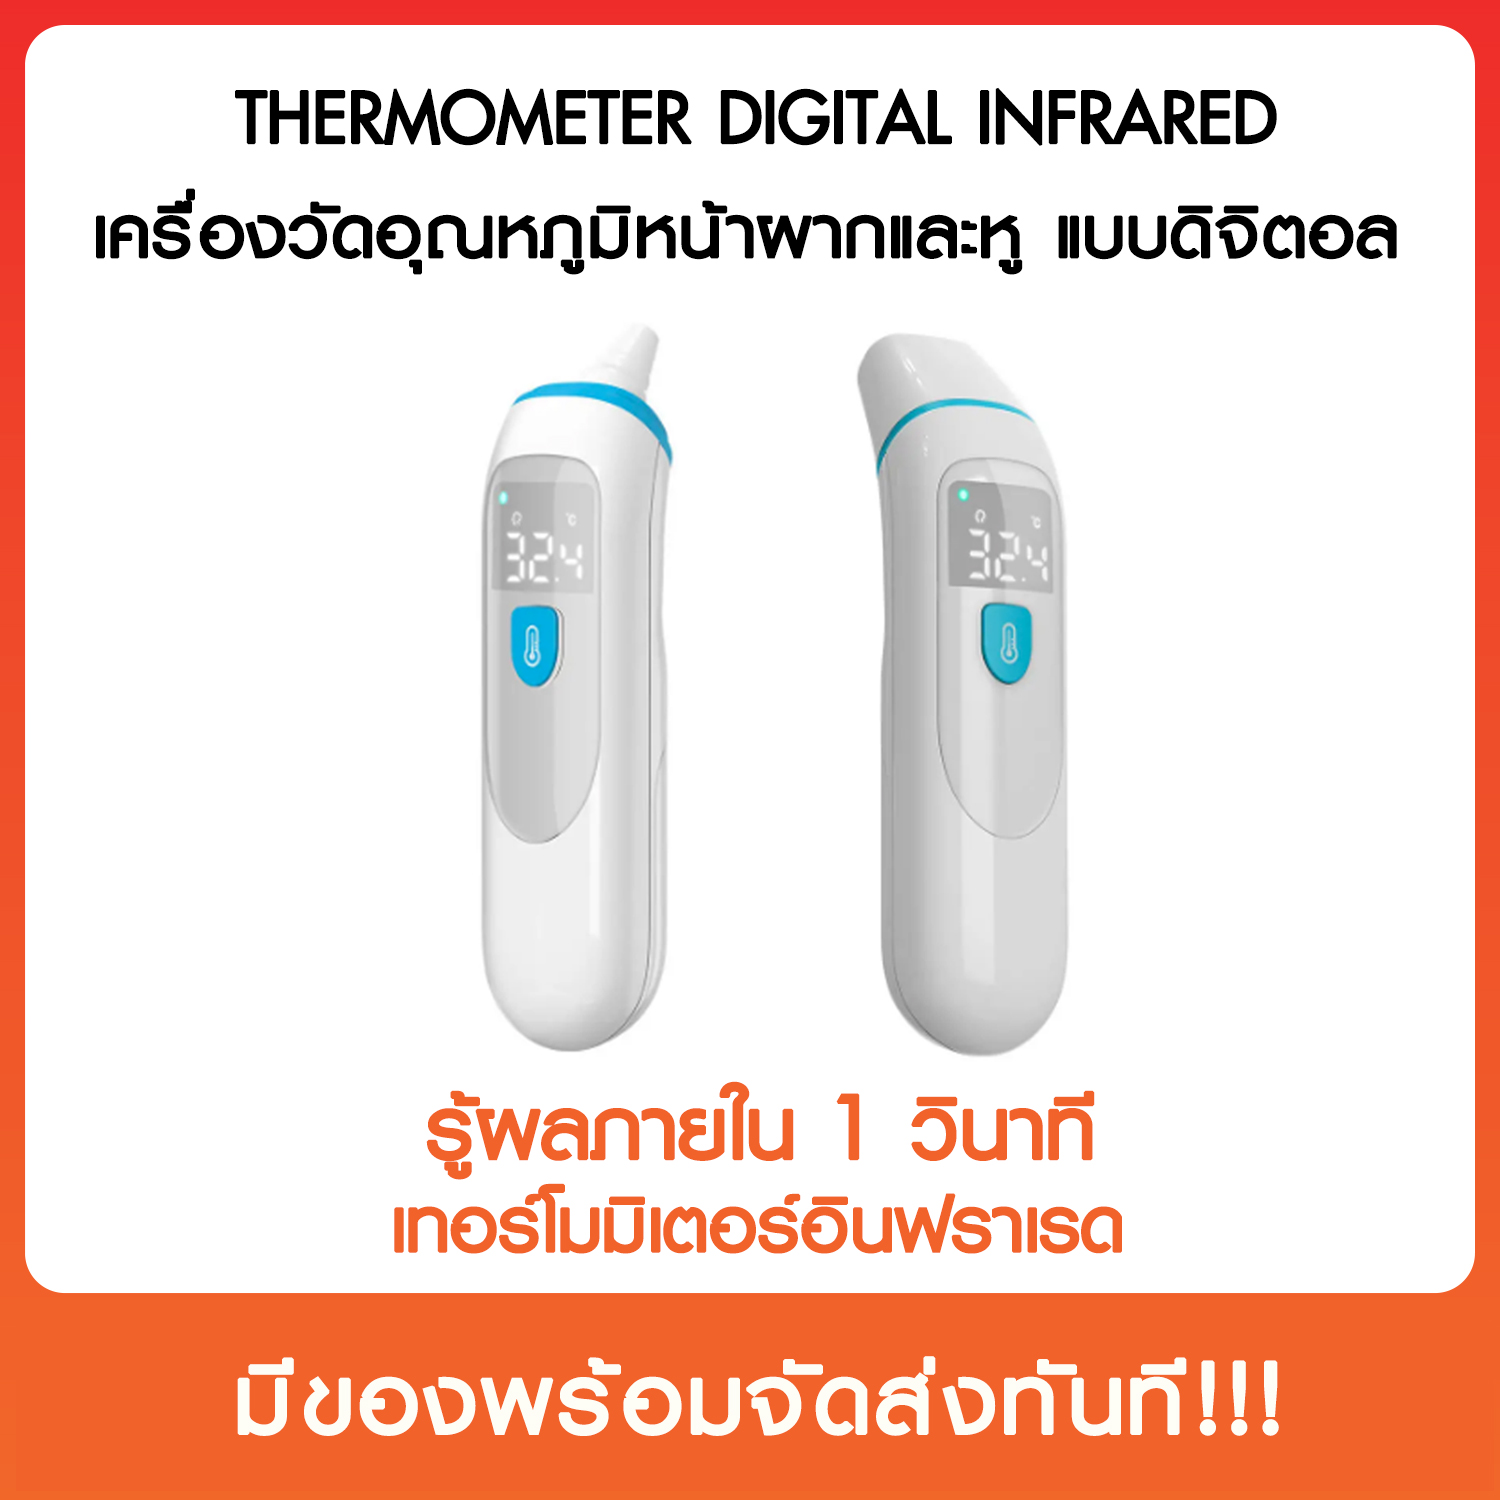 เครื่องวัดอุณหภูมิหน้าผากและหูแบบดิจิตอล Thermometer Digital Infrared เทอร์โมมิเตอร์อินฟราเรด